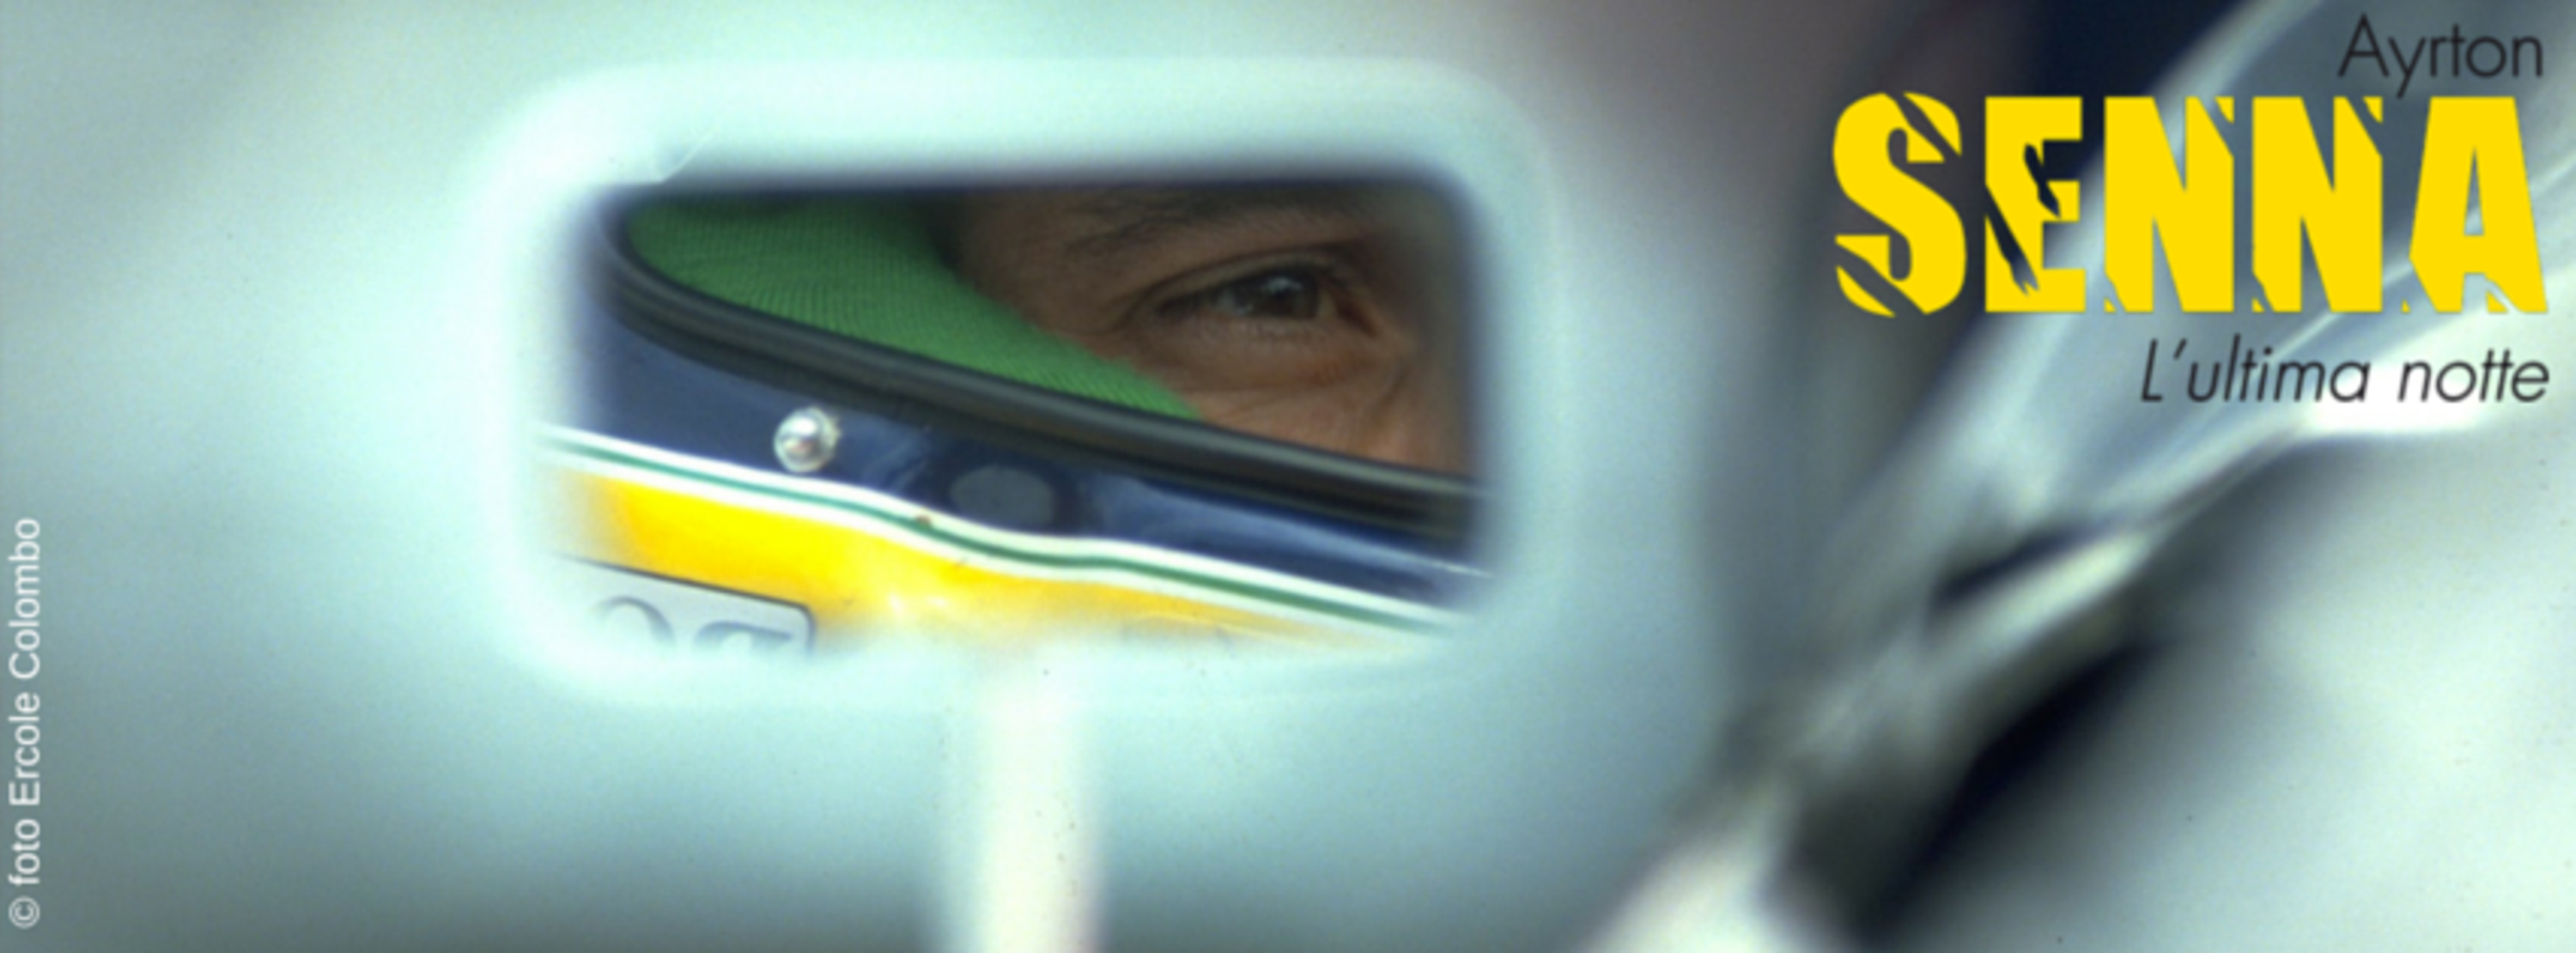 22&deg; anniversario morte Senna: incontro serale in autodromo a Monza sabato 30 aprile